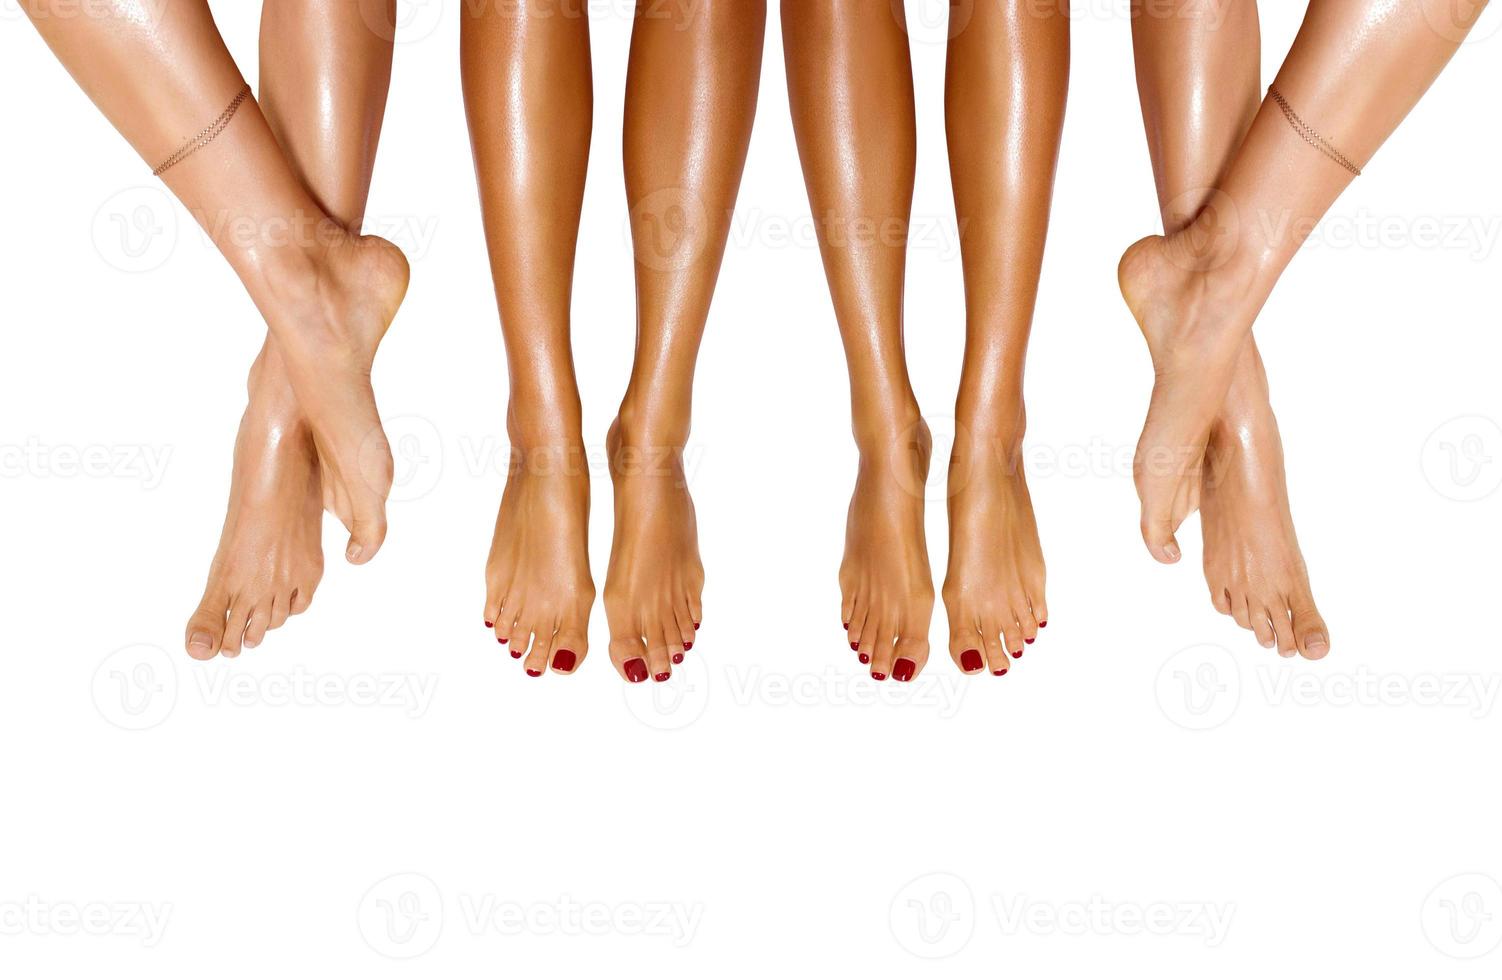 grupo de pernas femininas bonitas e lisas após a depilação a laser. tratamento, conceito de tecnologia foto